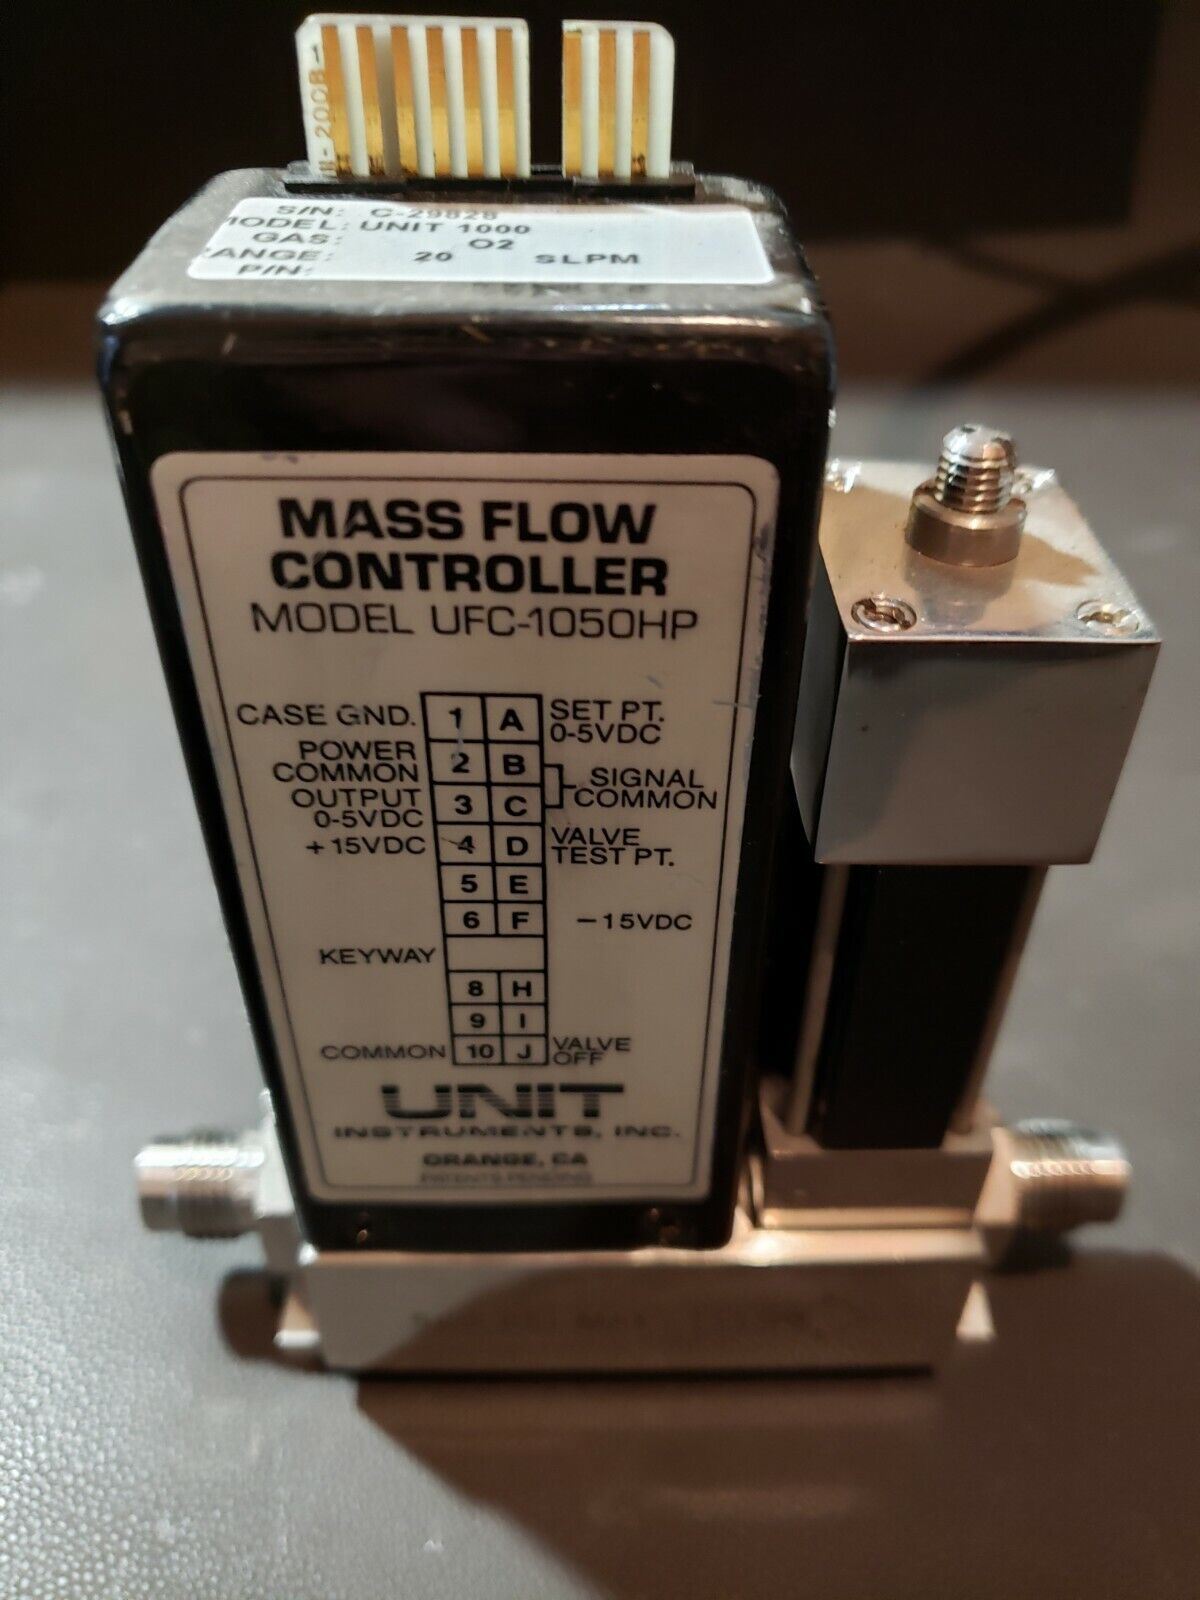 Semi Flow Unit 1000 UFC-1050HP O2 20 SLM 1/4 VCR Oxygen MFC Mass Flow